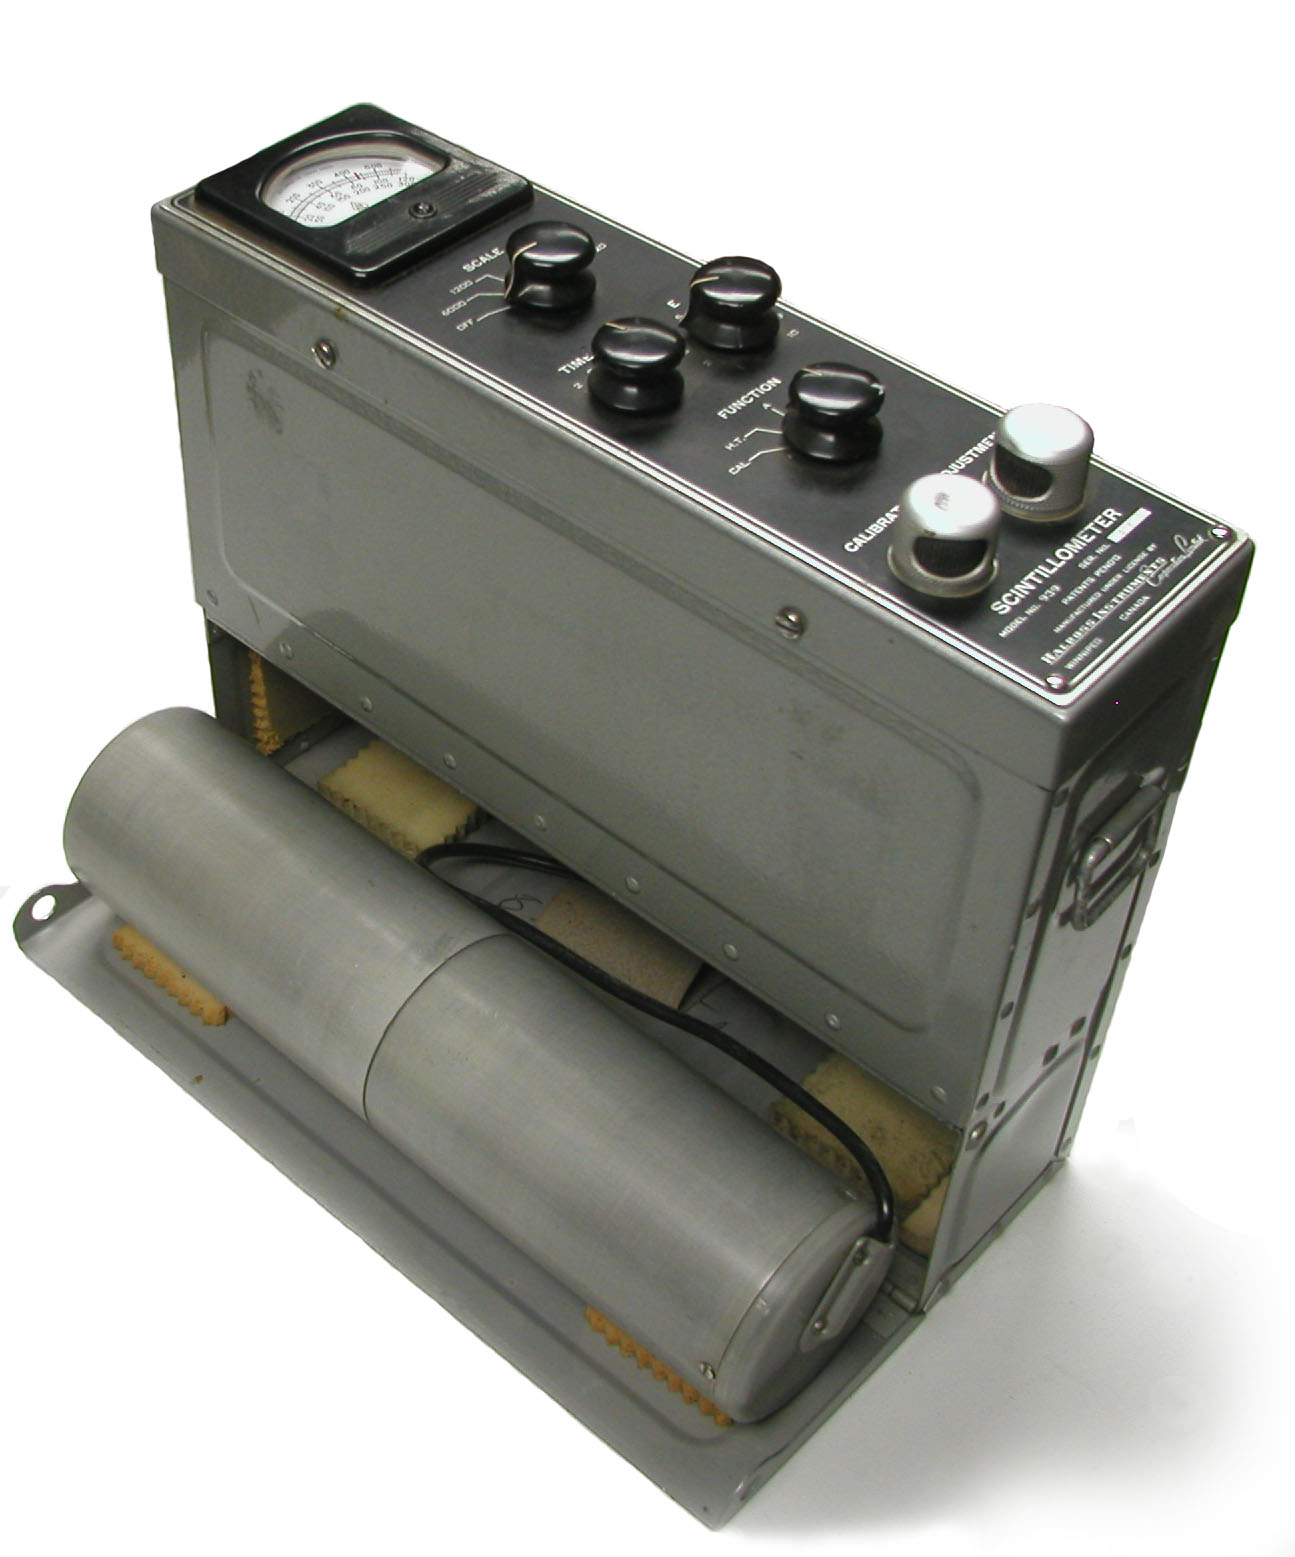 Halross Model 939 Scintillometer